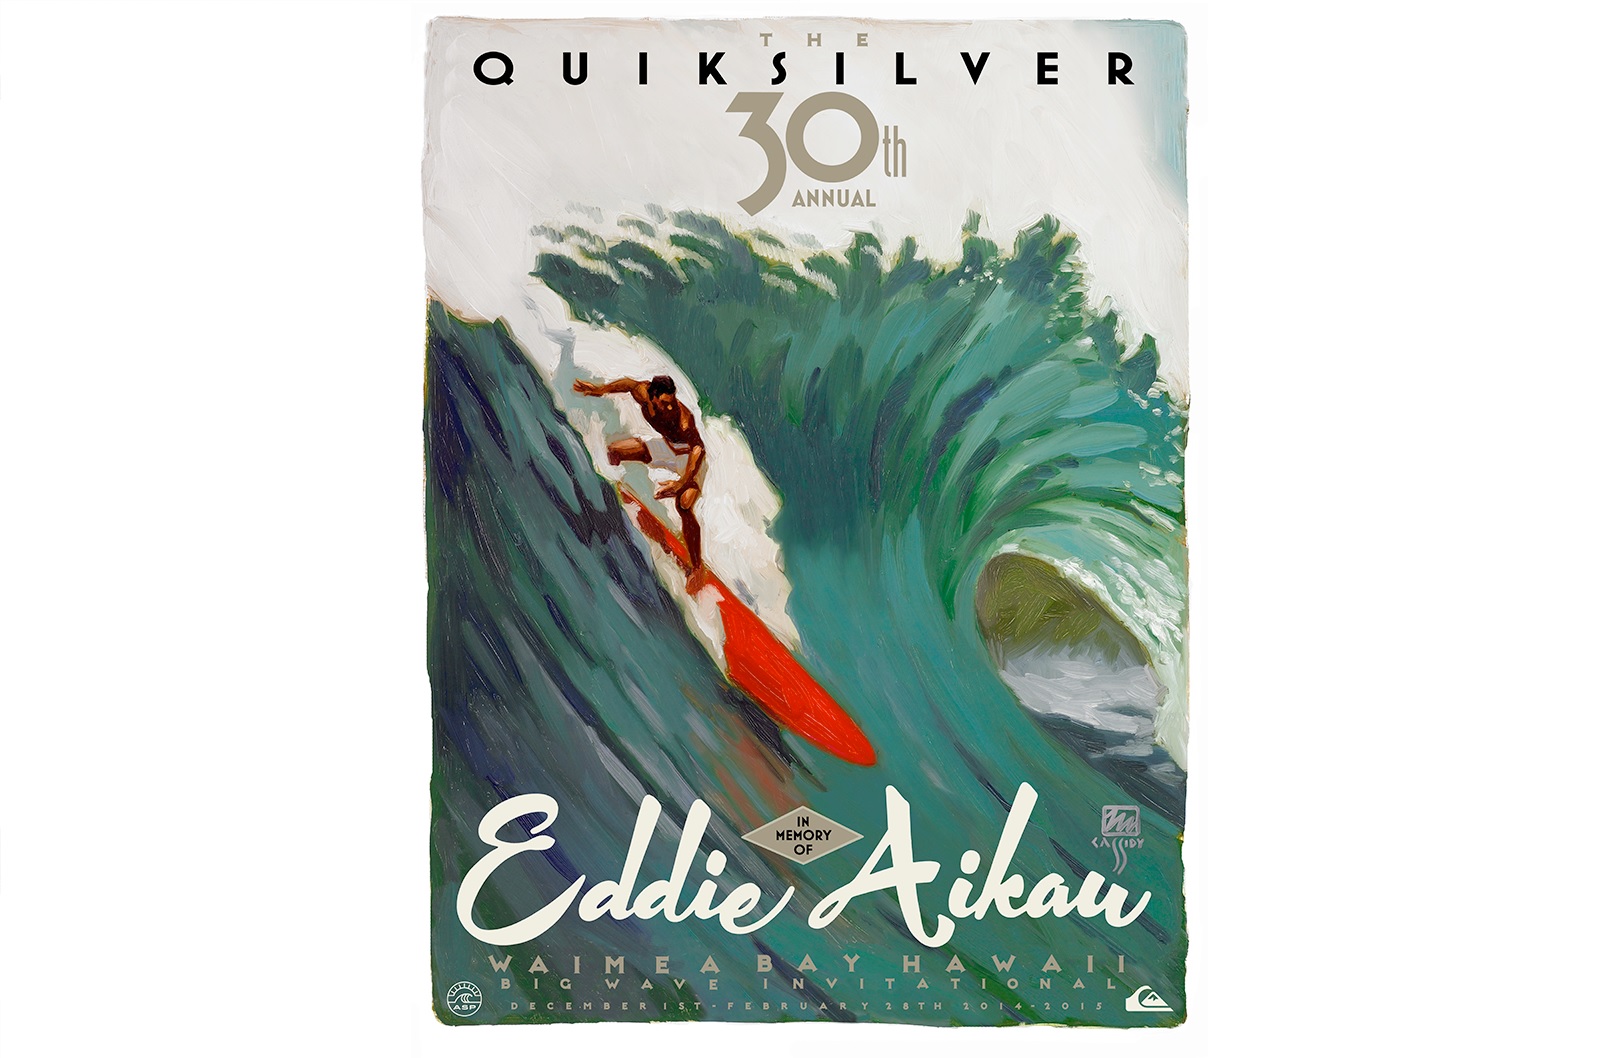 The Quiksilver in Memory of Eddie Aikau